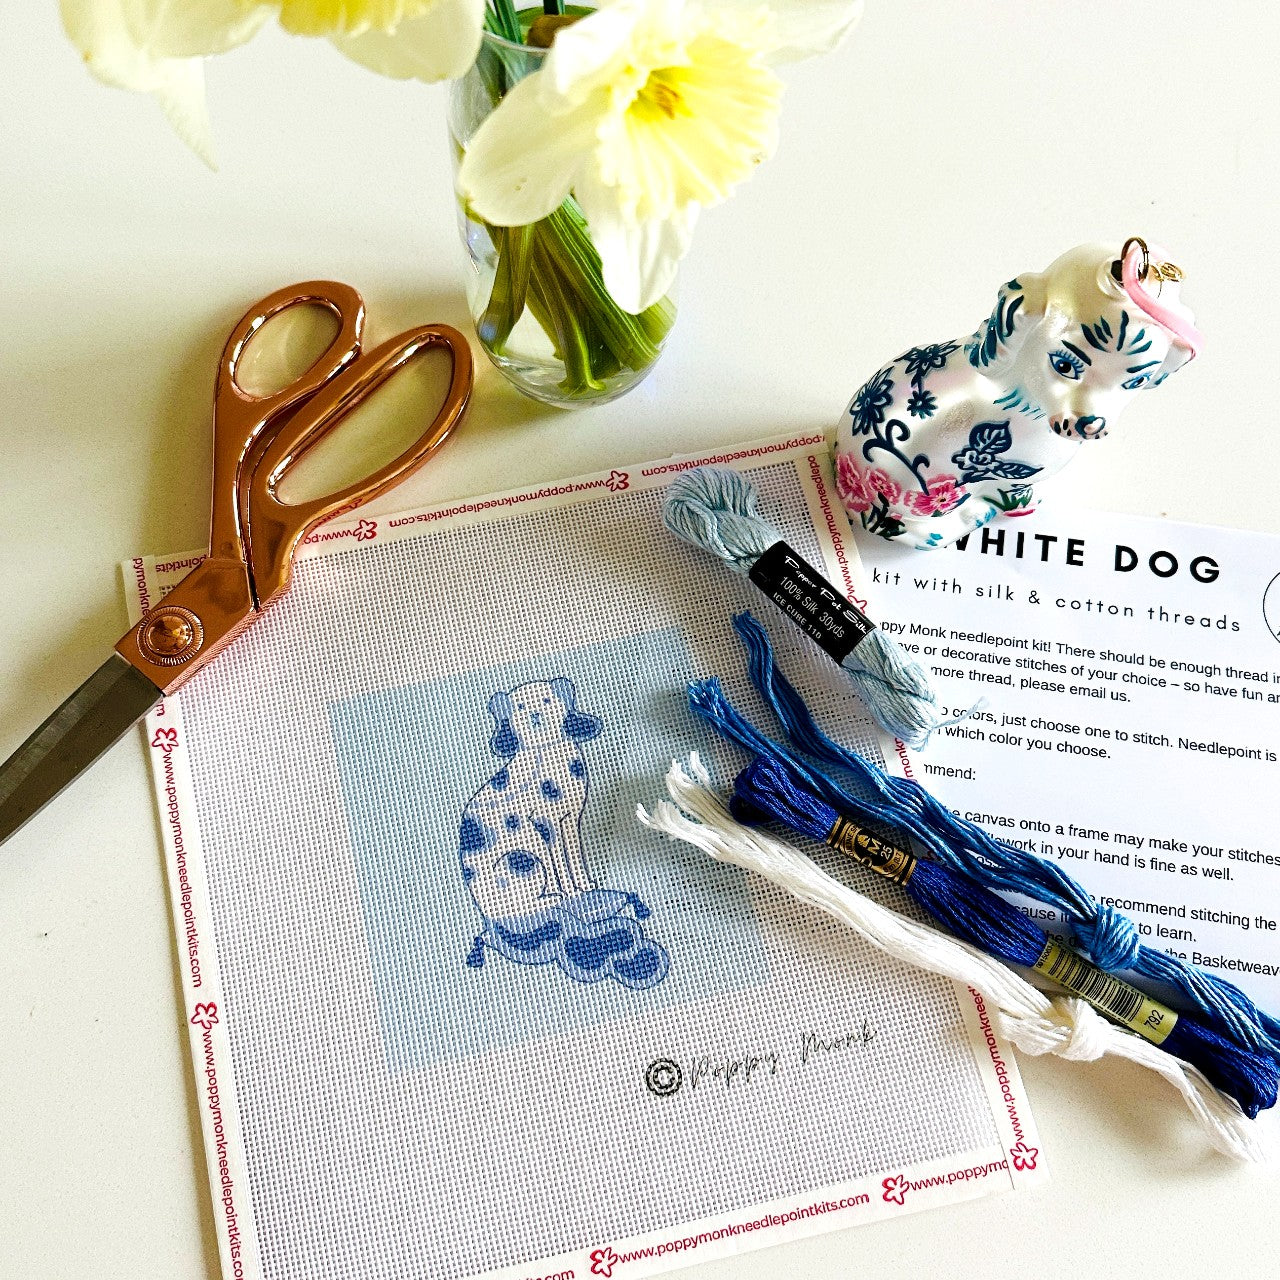 Blue and White Staffordshire Dog needlepoint kit